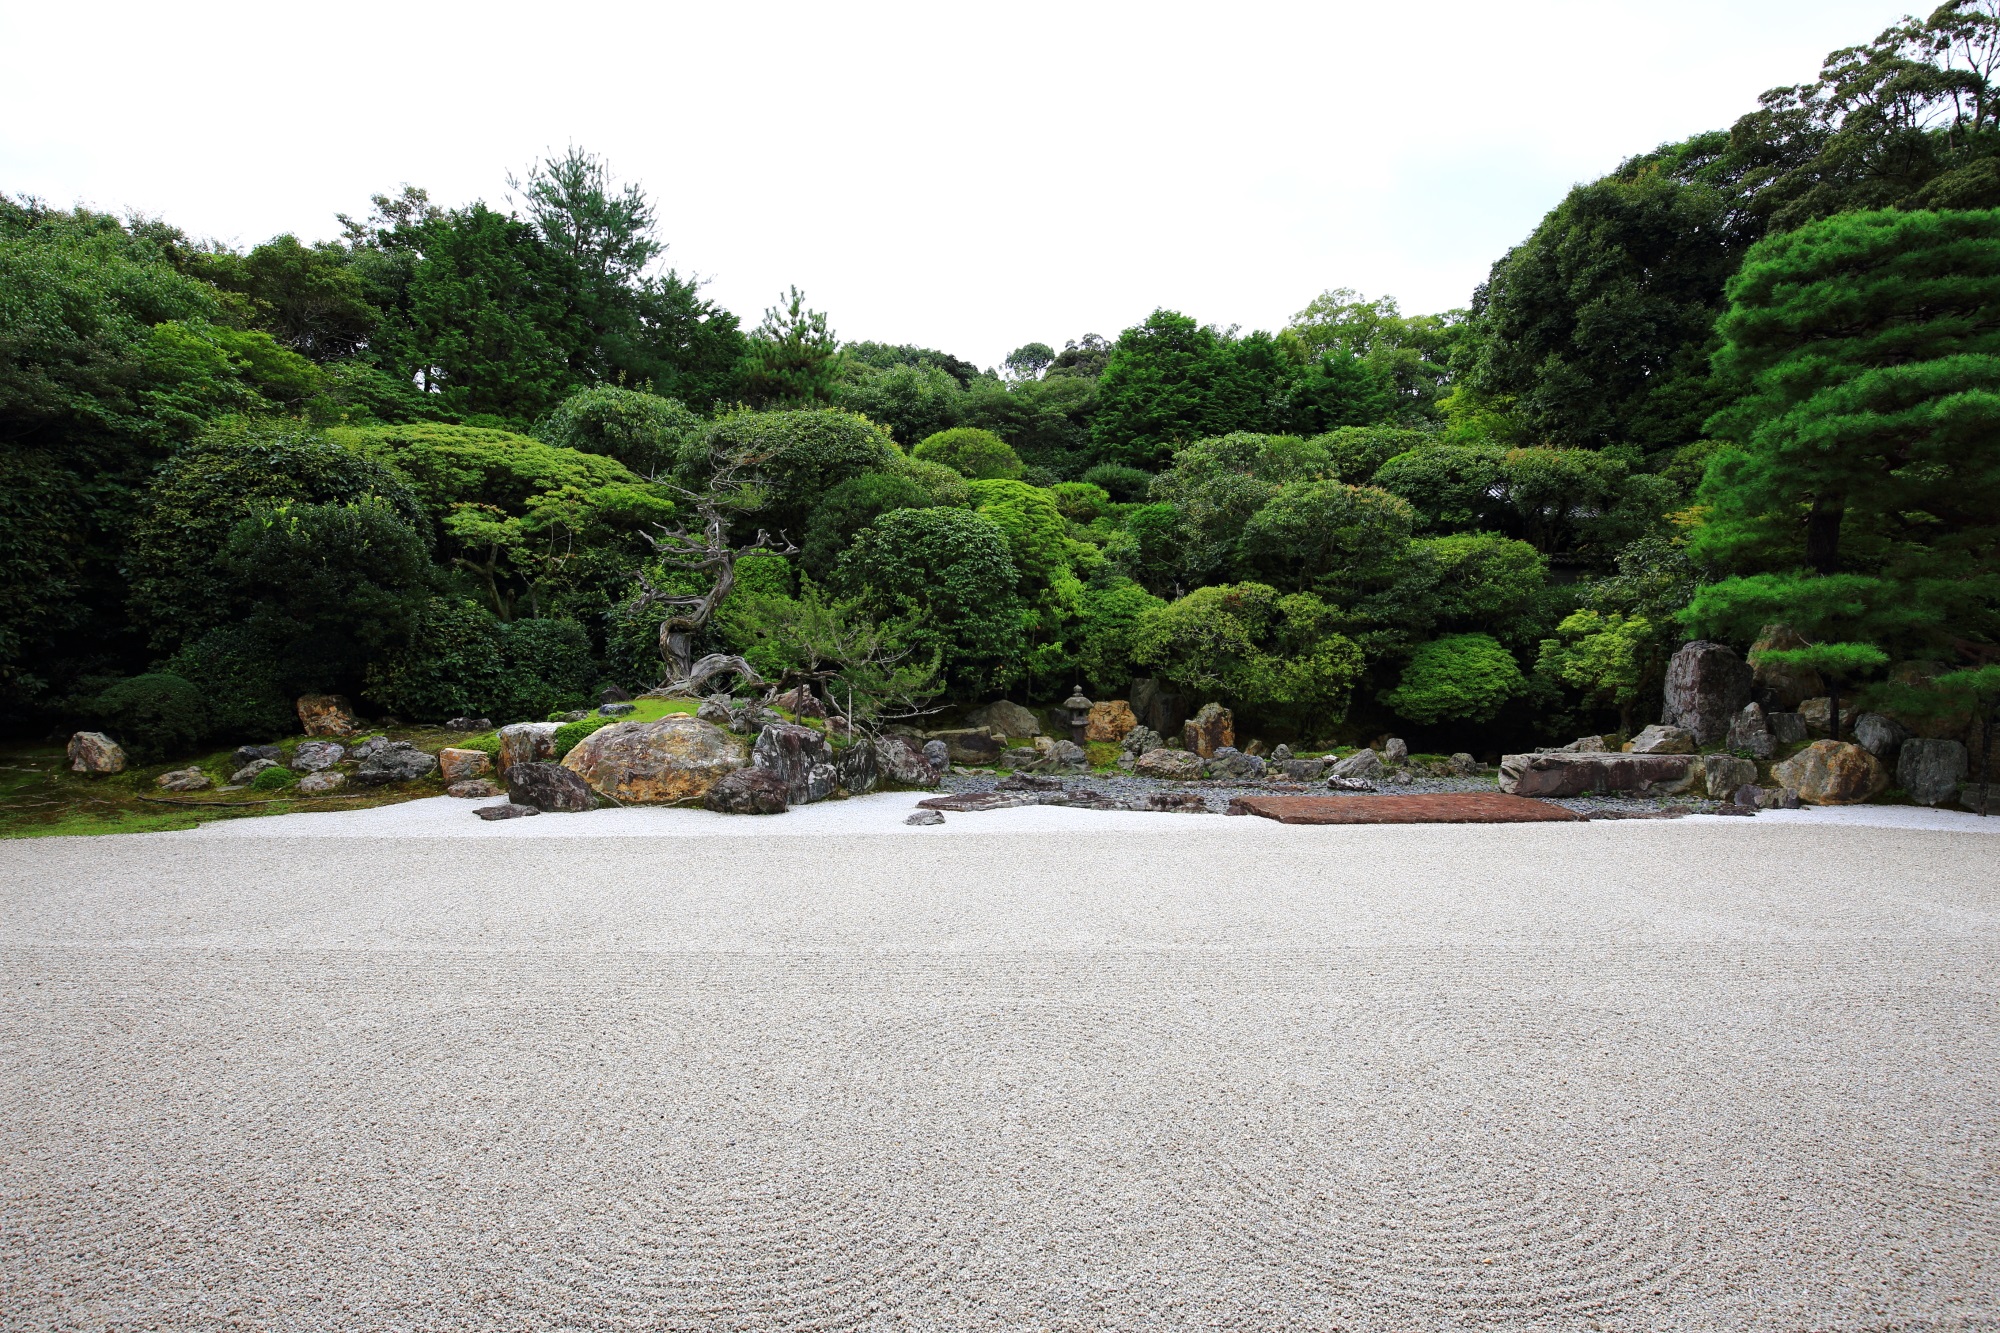 鶴亀の庭園 金地院 京都 綺麗